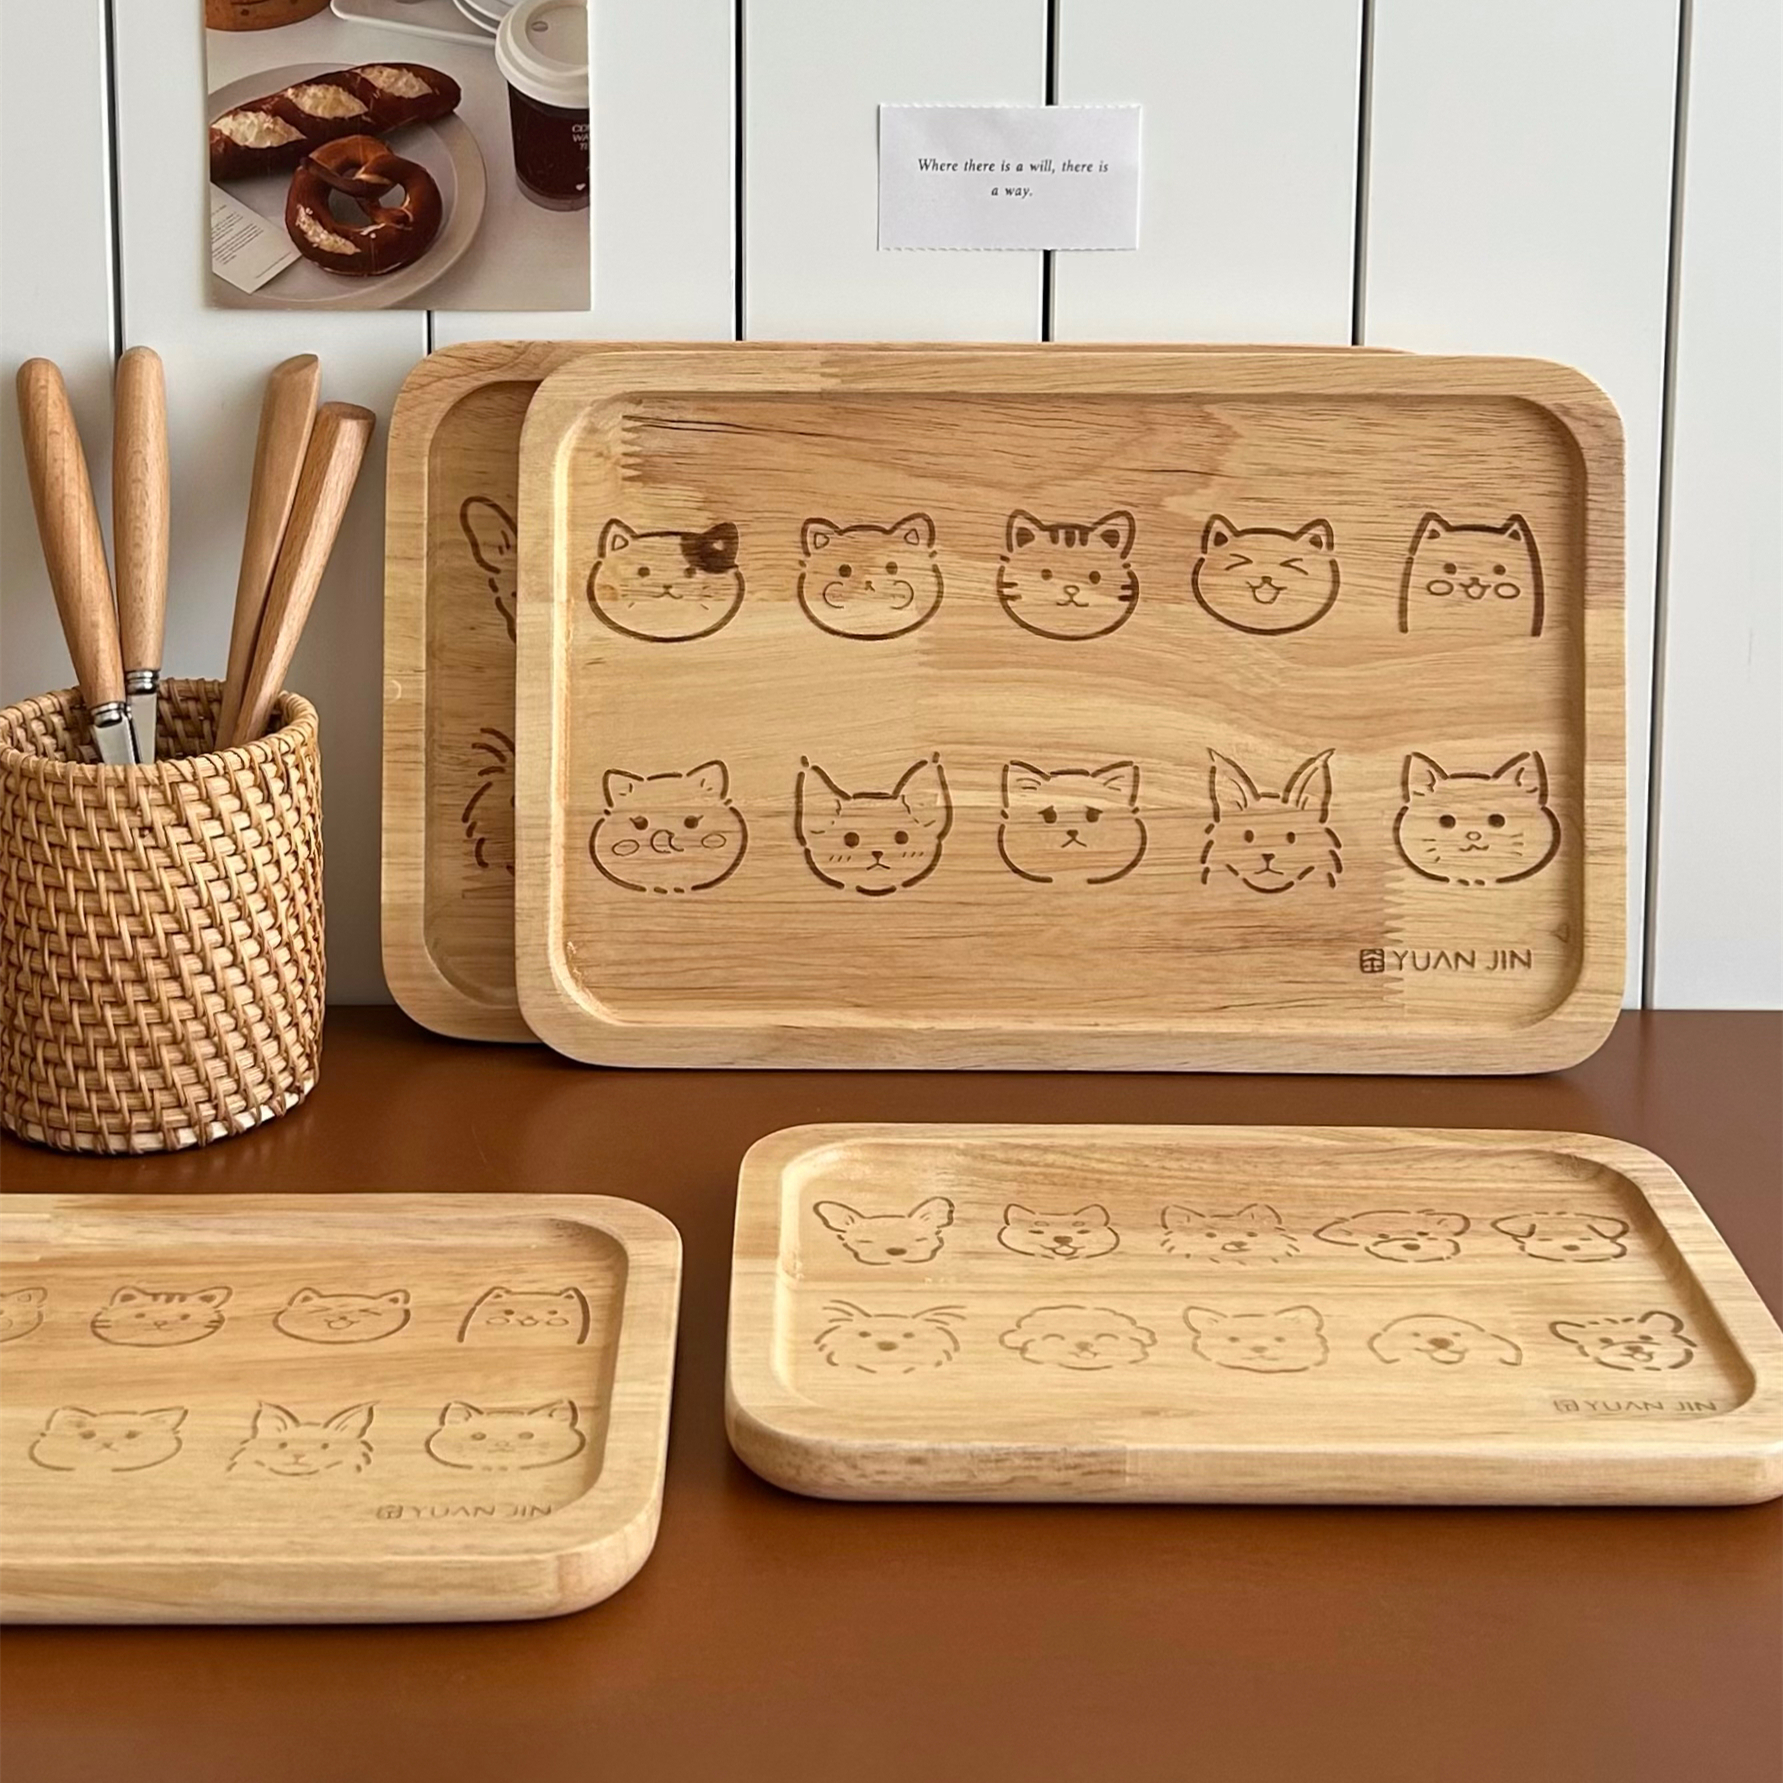 猫狗双全~新年招待客人创意可爱木质托盘一人食餐盘家用隔热茶盘